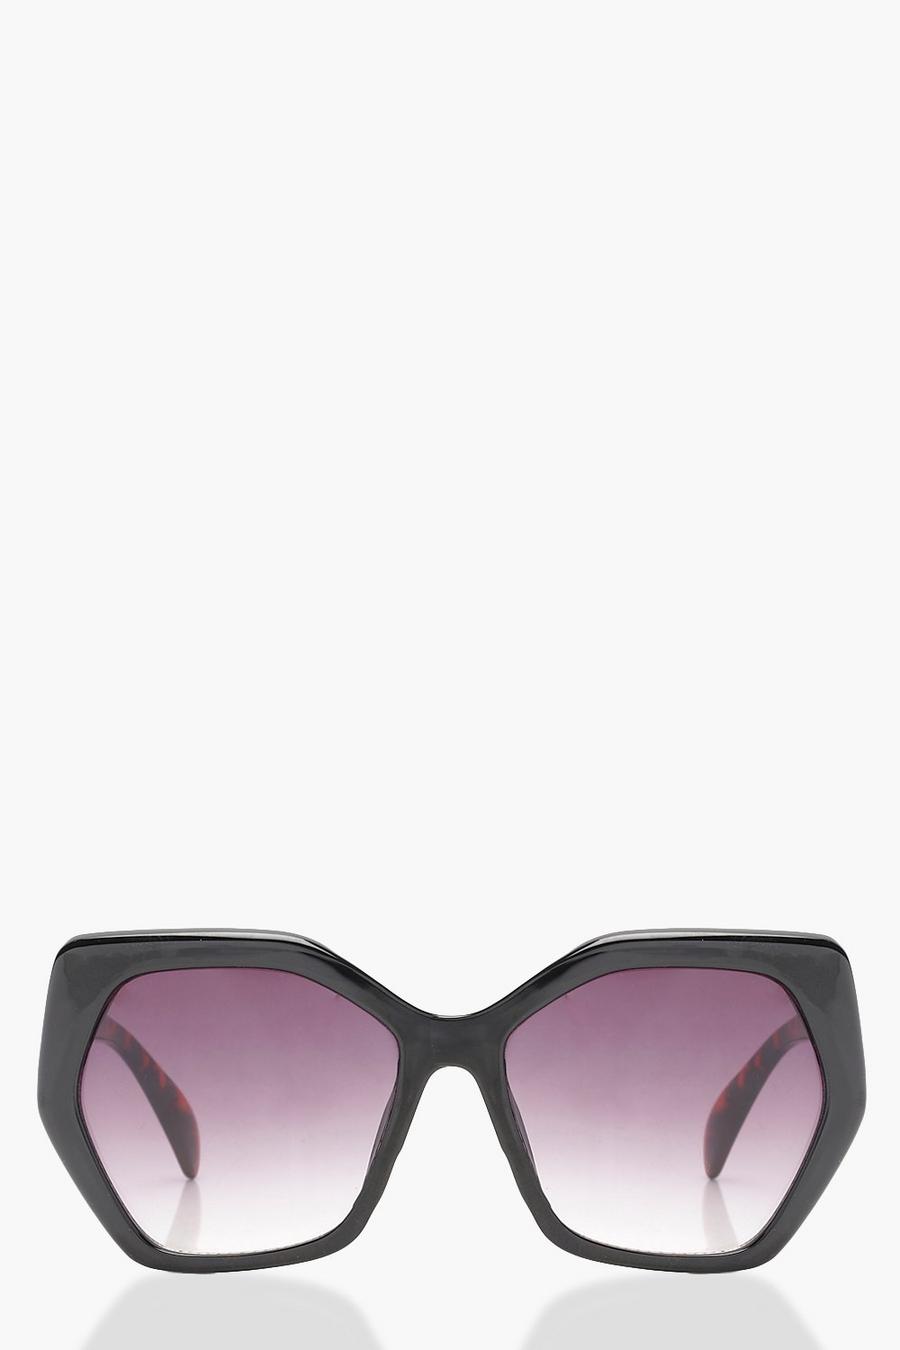 Black Violet Gradient Lens Oversized Sunglasses image number 1